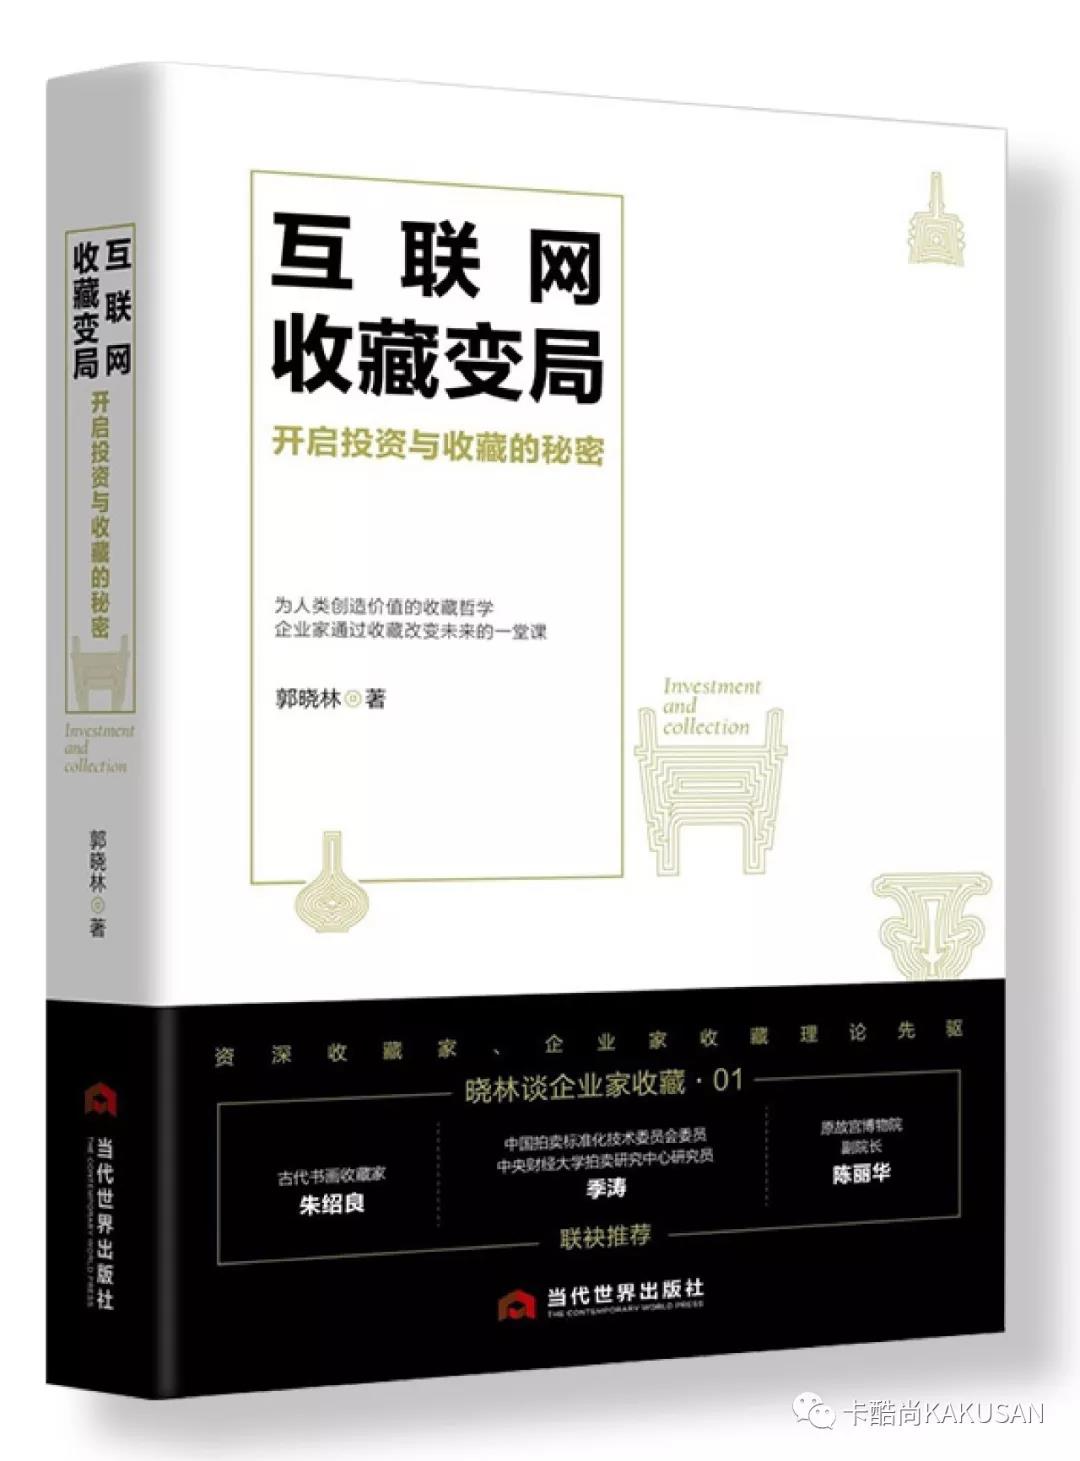 郭晓林先生书籍《互联网收藏变局》在会上引起广泛探讨